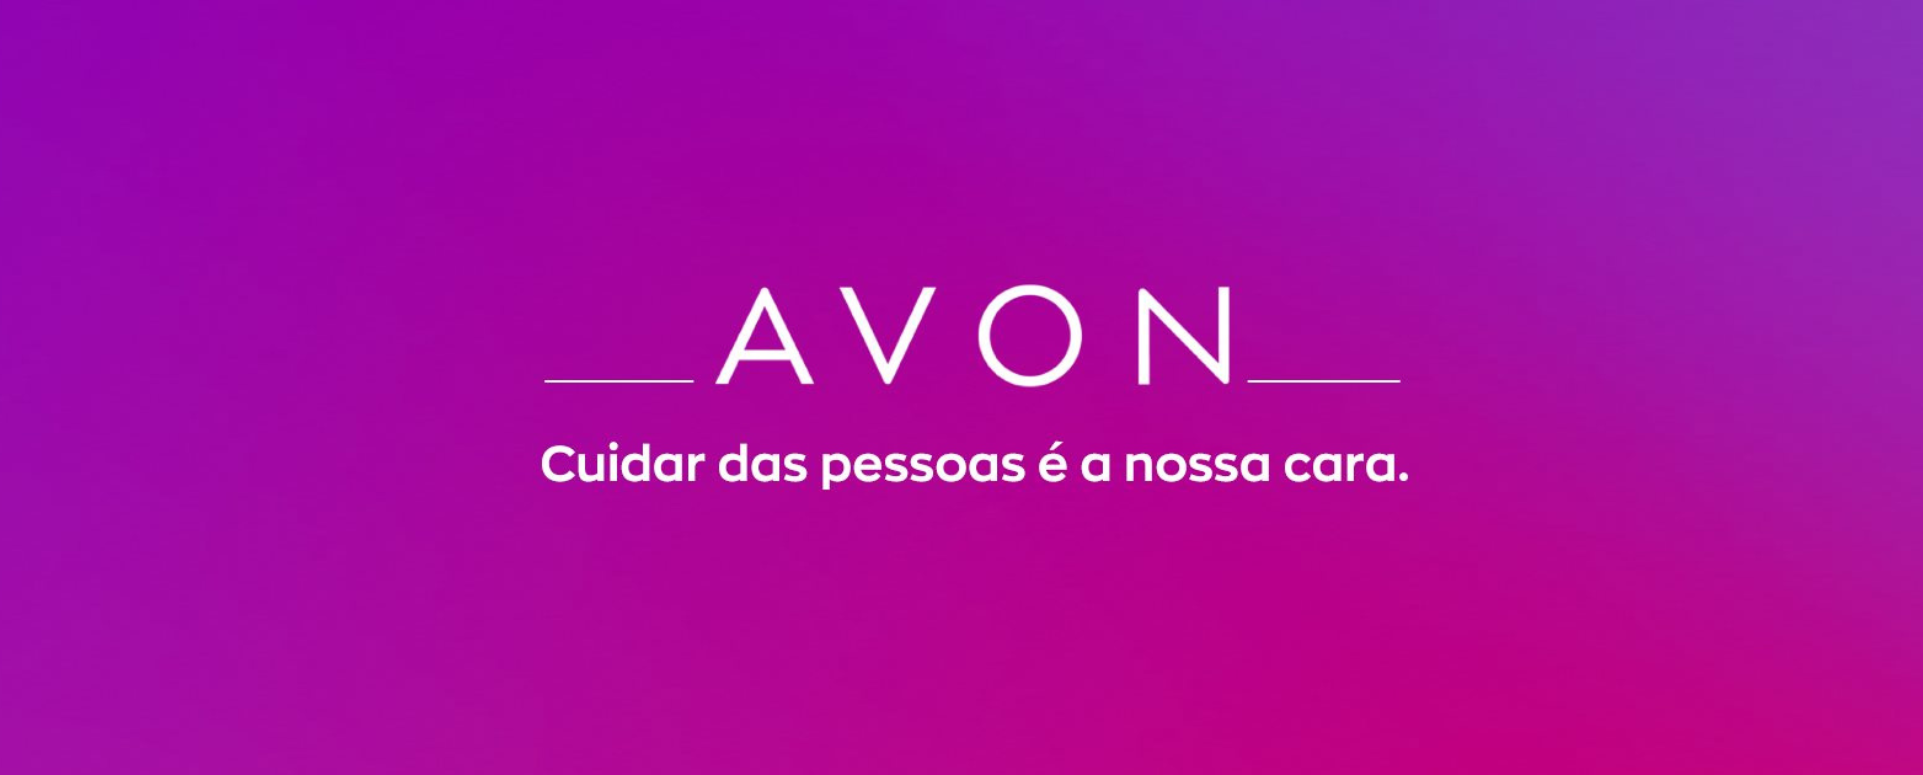 Avon vai abrir centro de inovação no Brasil mirando diversidade local